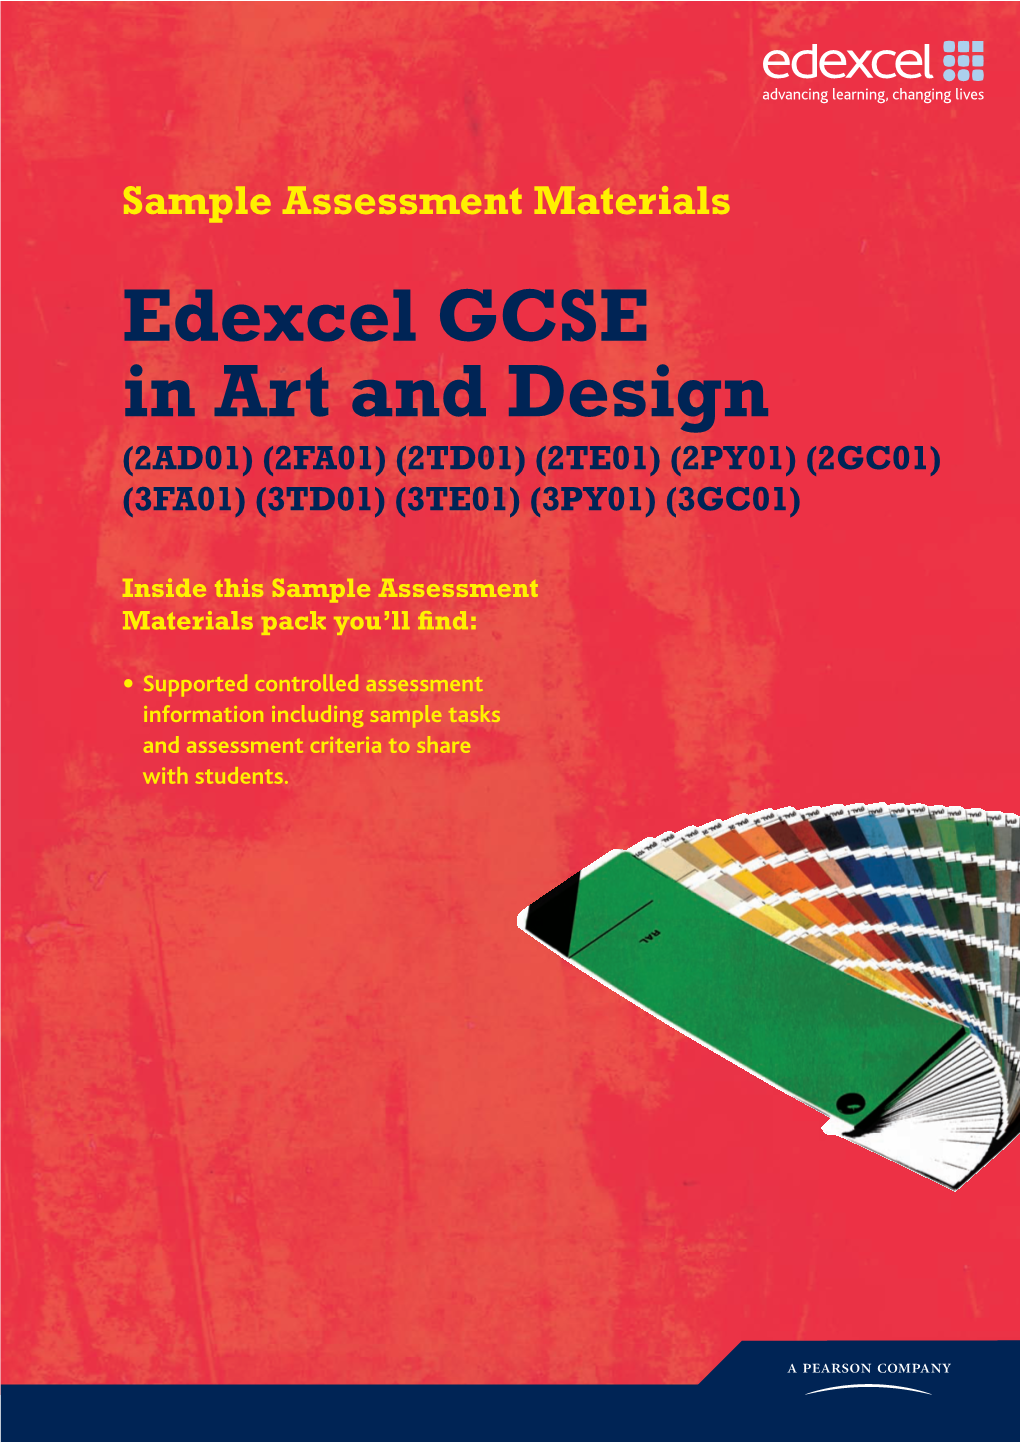 Sample Assessment Materials Edexcel GCSE in Art and Design (2AD01) (2FA01) (2TD01) (2TE01) (2PY01) (2GC01) (3FA01) (3TD01) (3TE01) (3PY01) (3GC01)